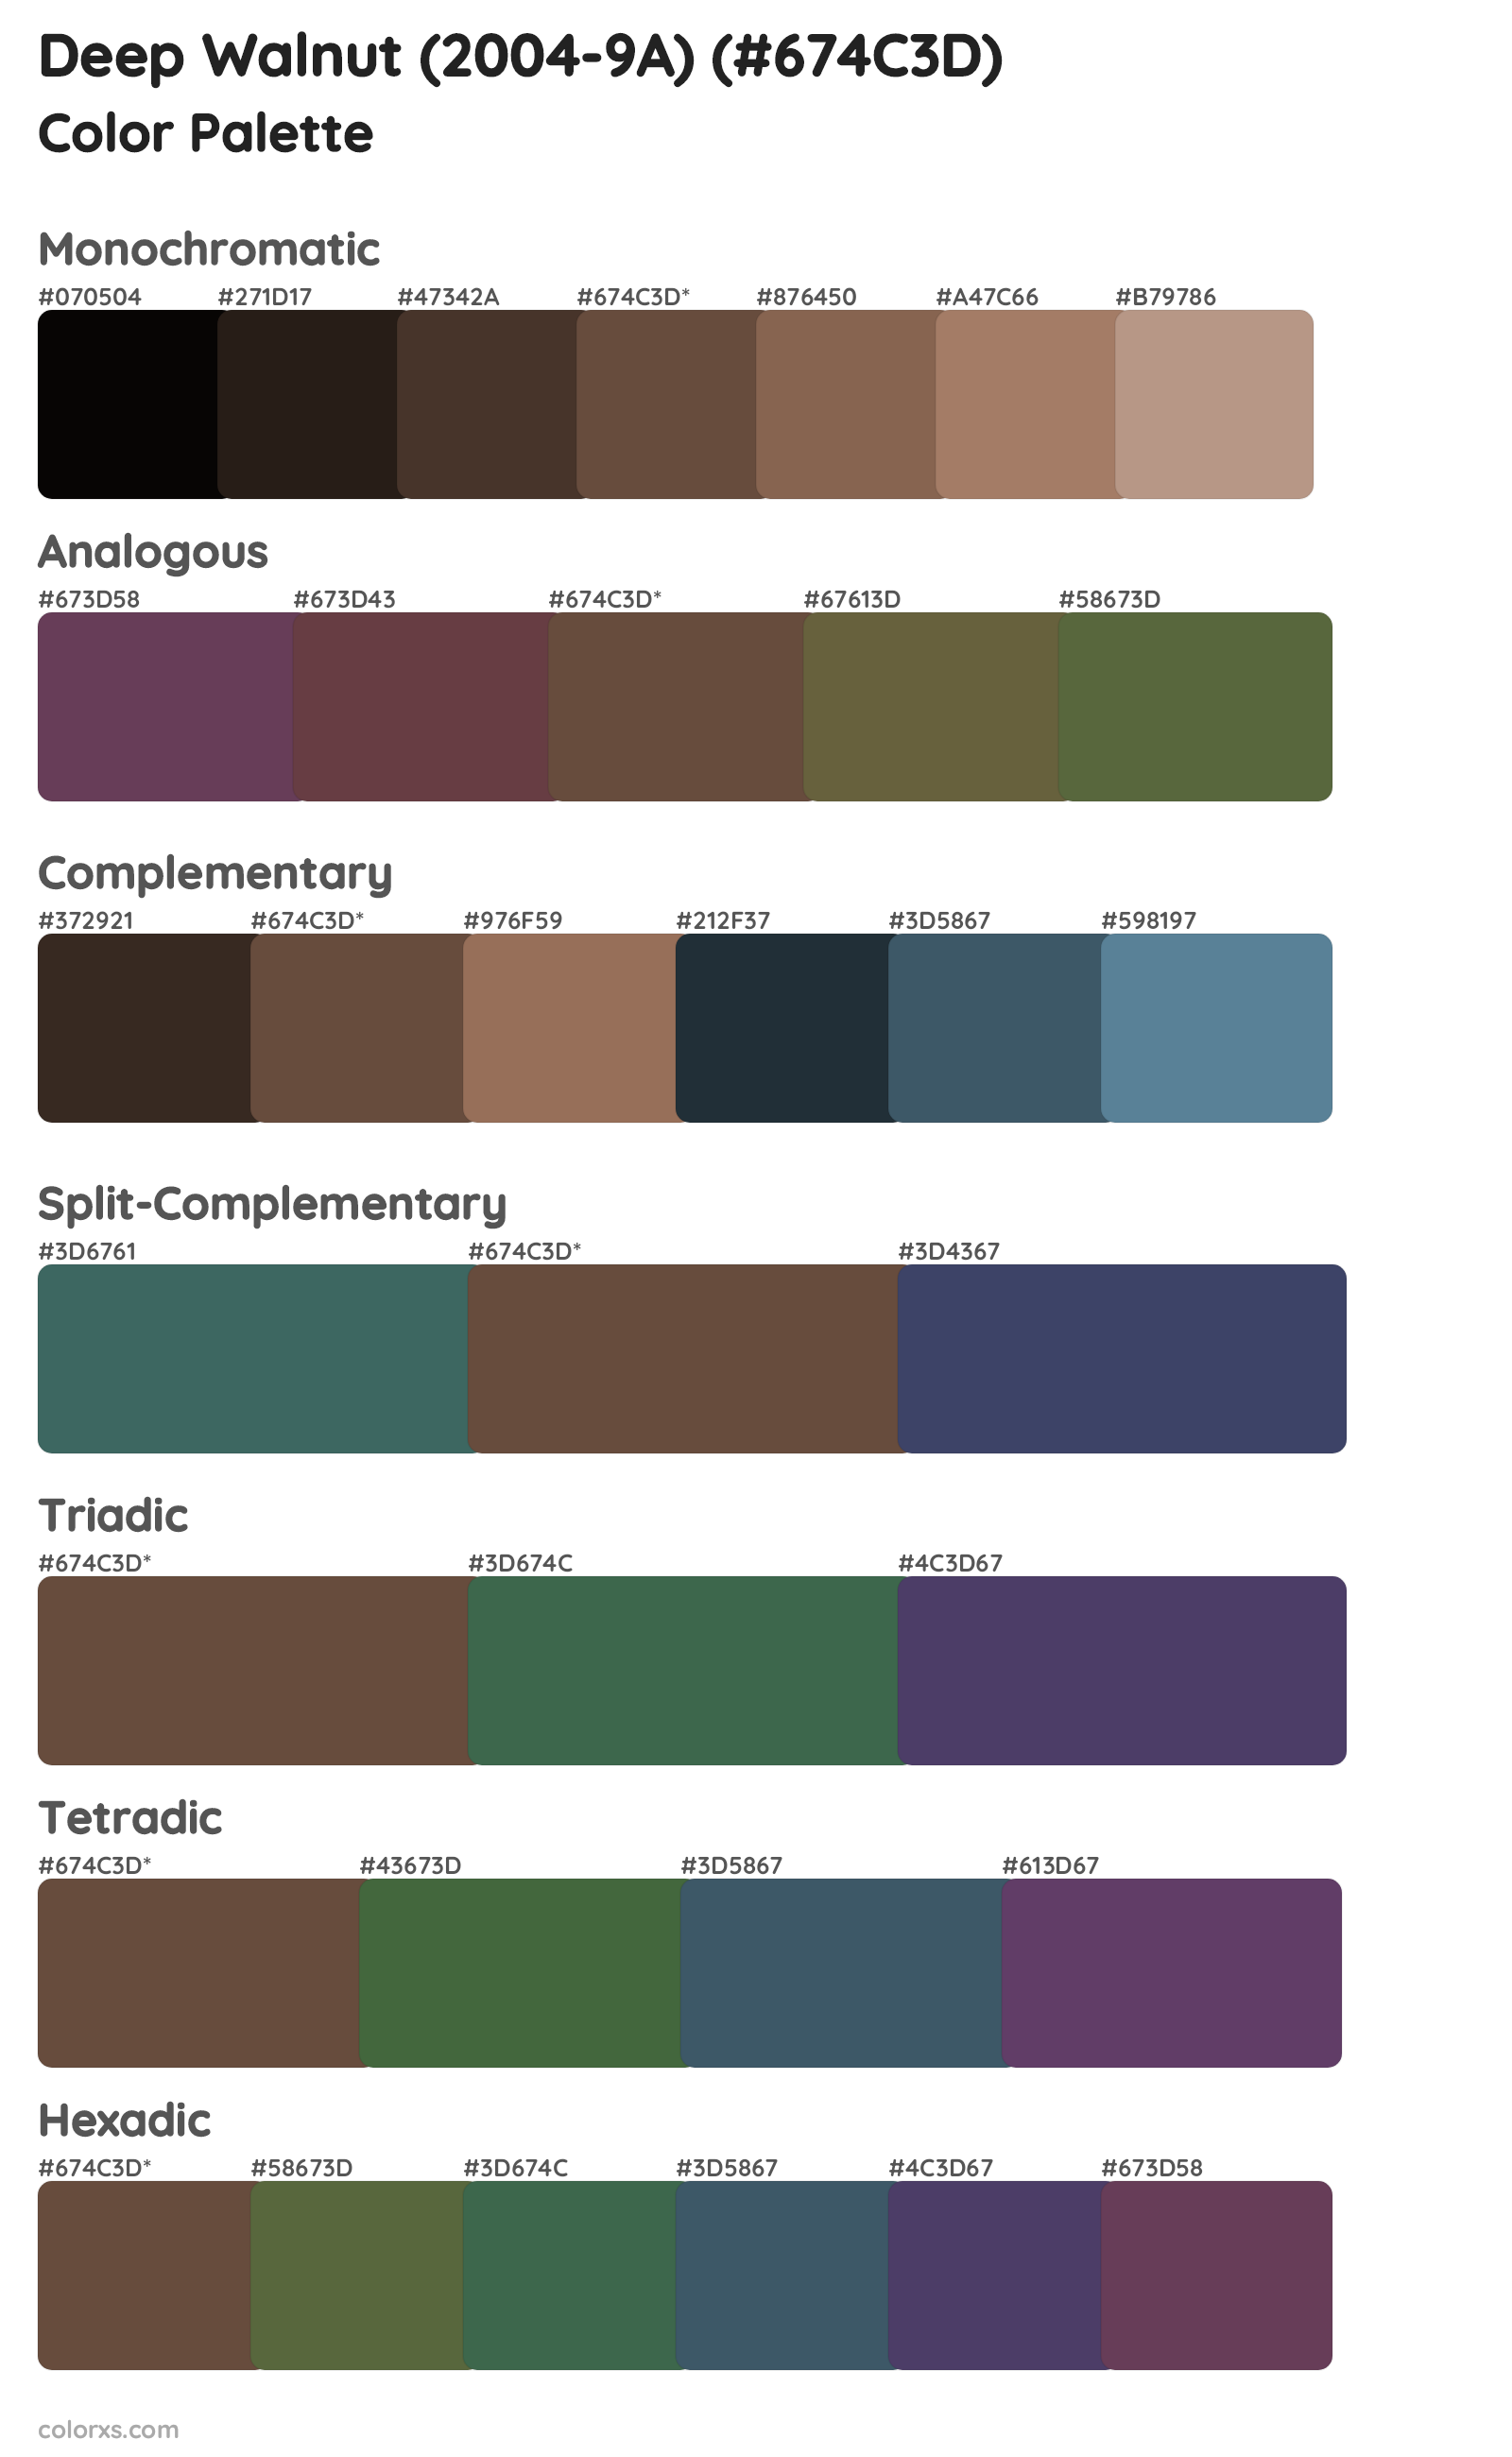 Deep Walnut (2004-9A) Color Scheme Palettes